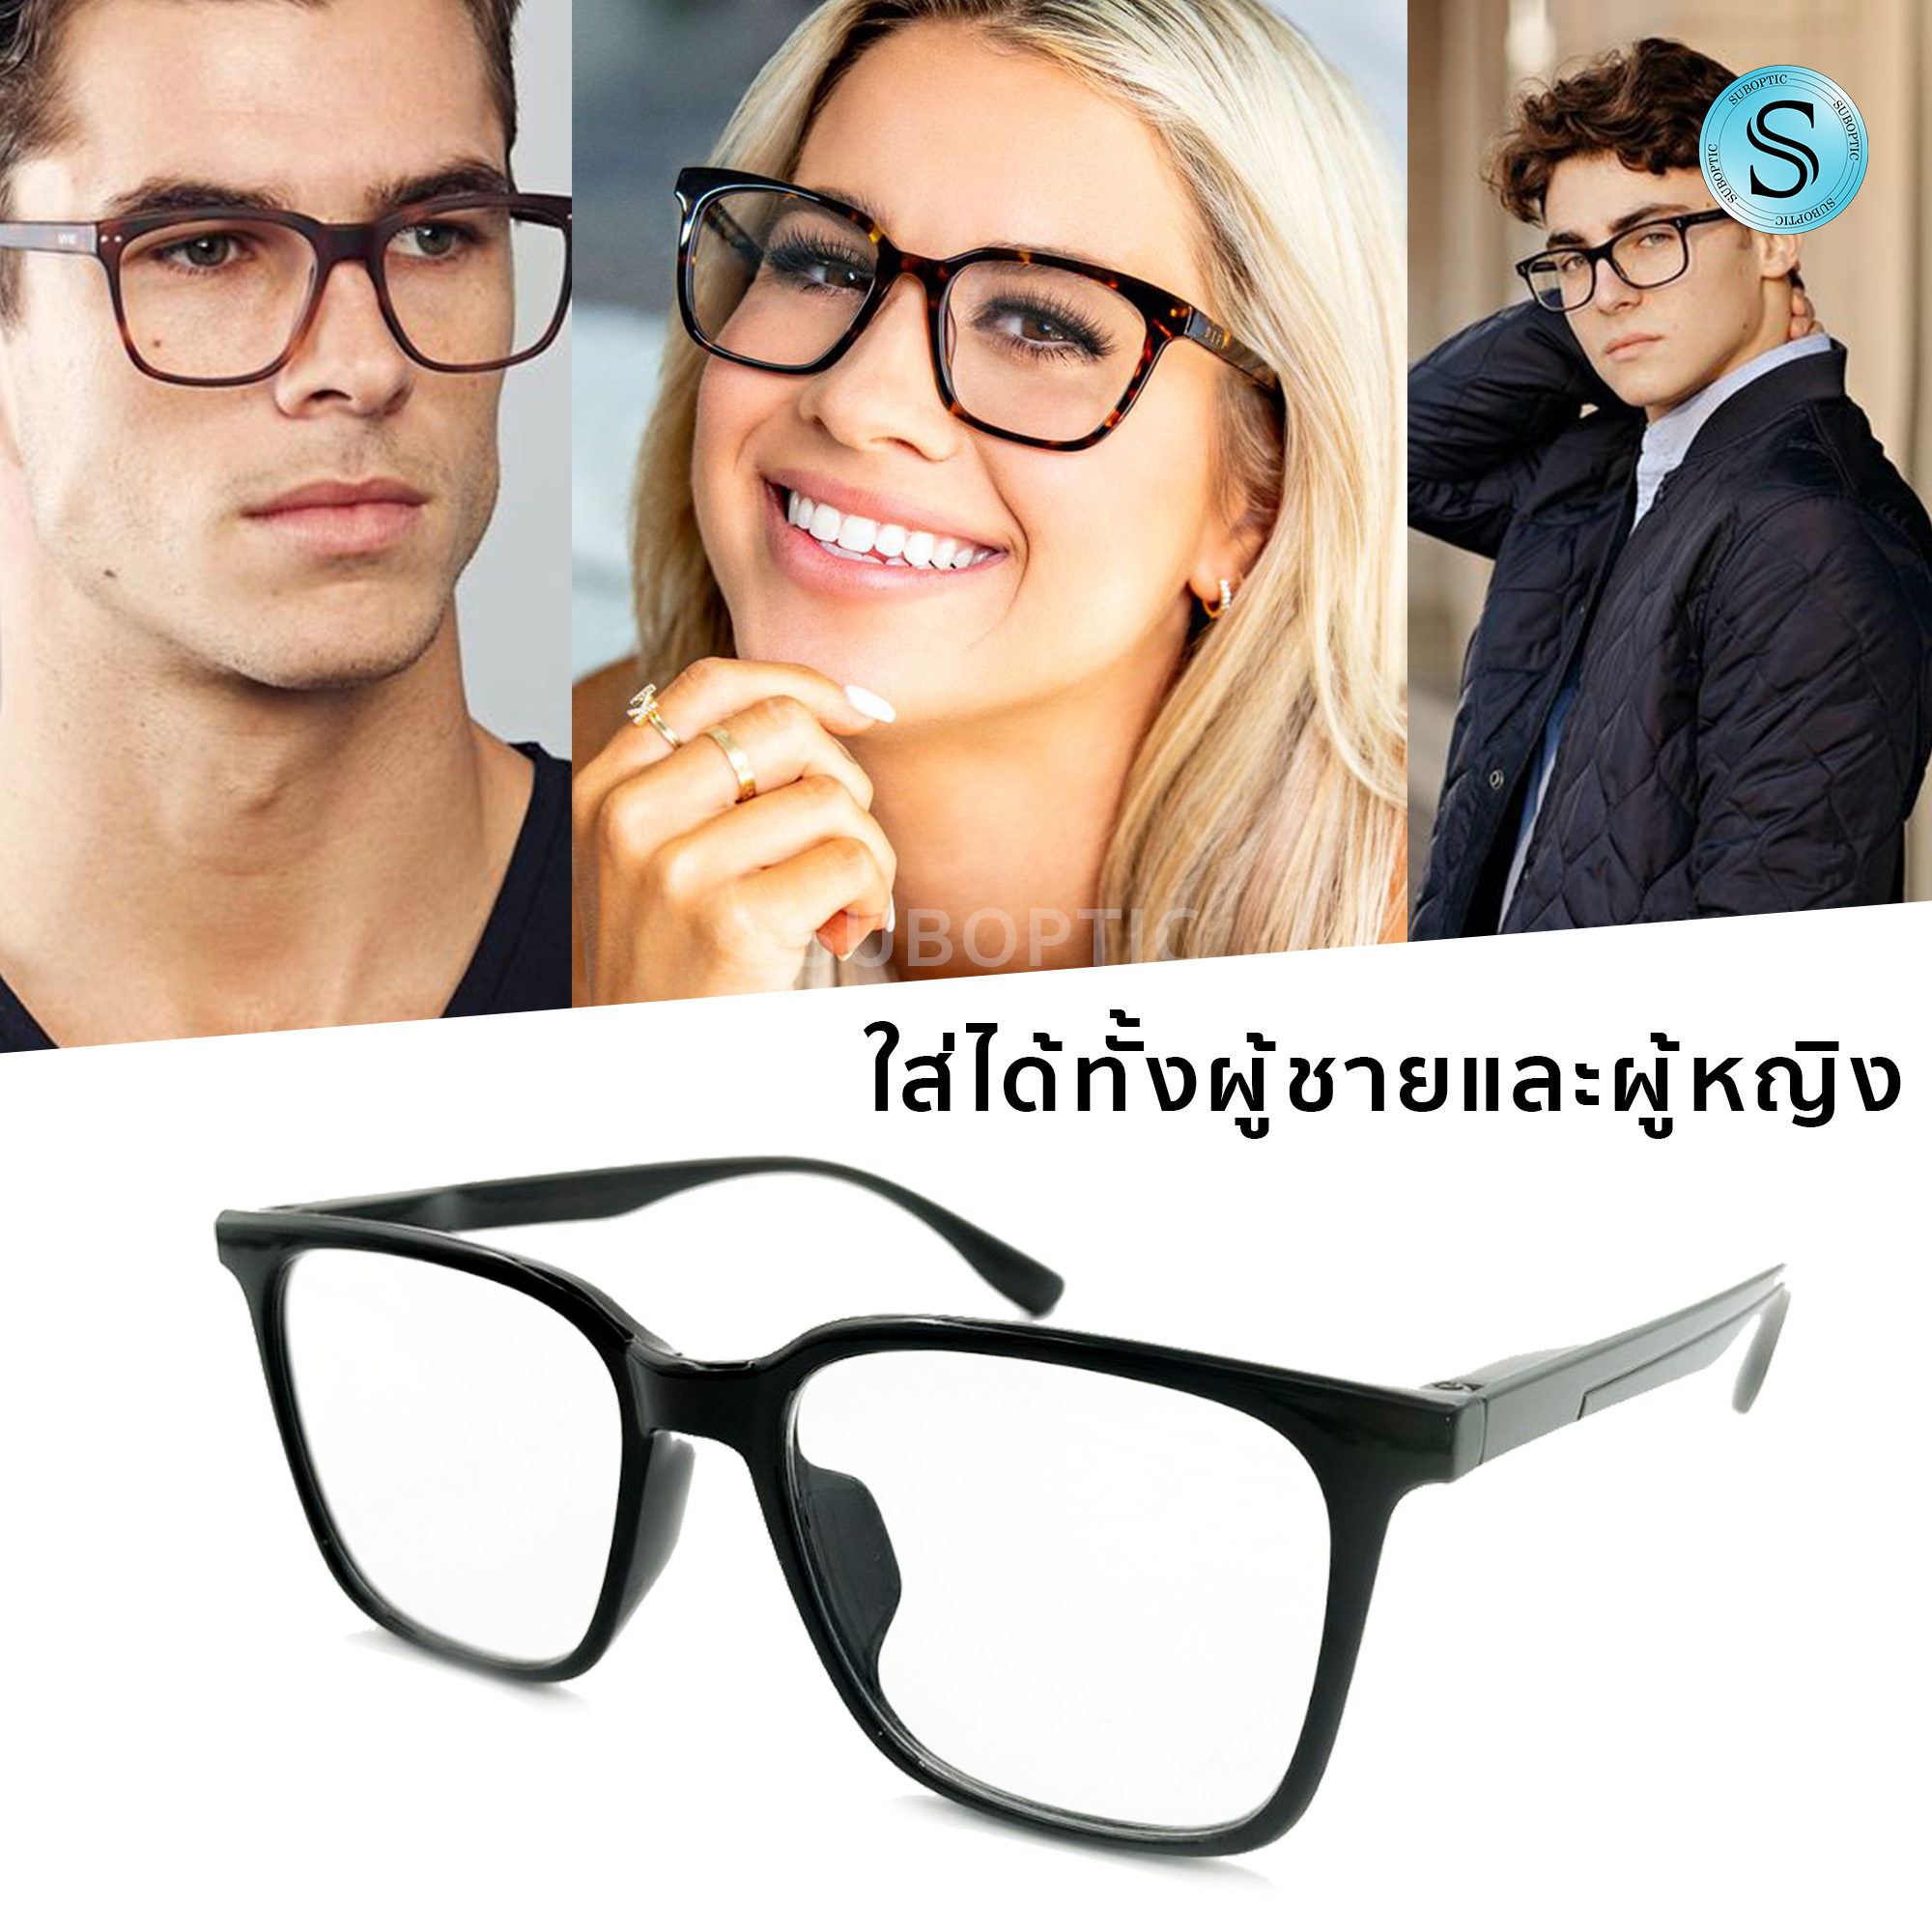 ภาพประกอบของ Sic แว่นสายตายาว ขาสปริง แว่นสายตา แว่นสายตาสำหรับอ่านหนังสือ แว่นตา+กรอบแว่น